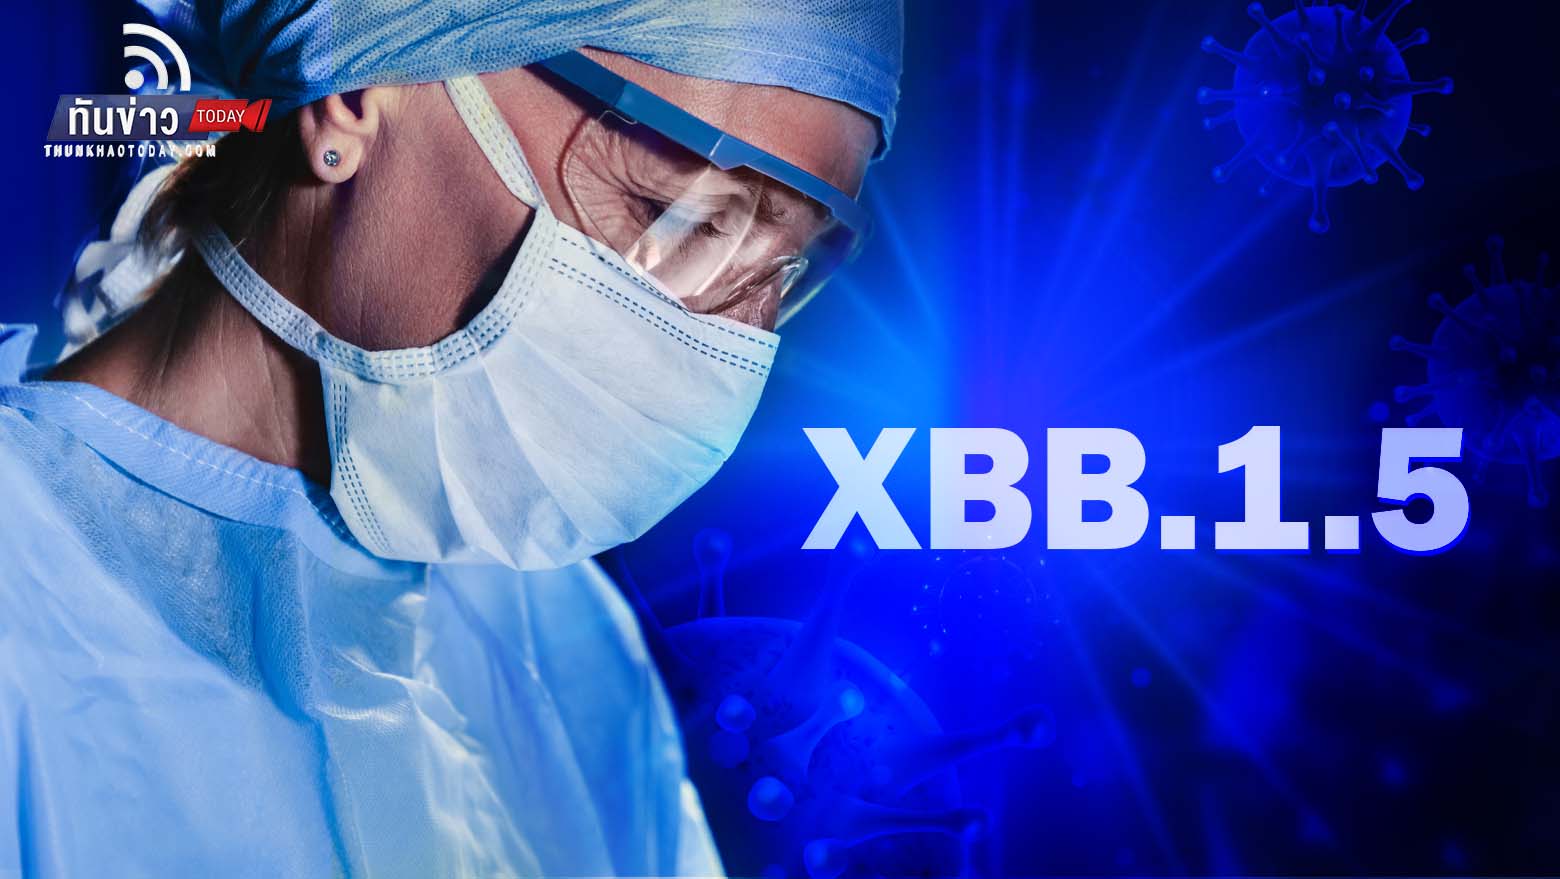 รู้จักโควิดสายพันธุ์ใหม่ XBB.1.5 แพร่กระจายได้รวดเร็วที่สุดเท่าที่เคยมีมา ระบาดแล้วถึง 29 ประเทศแล้วในปัจจุบัน